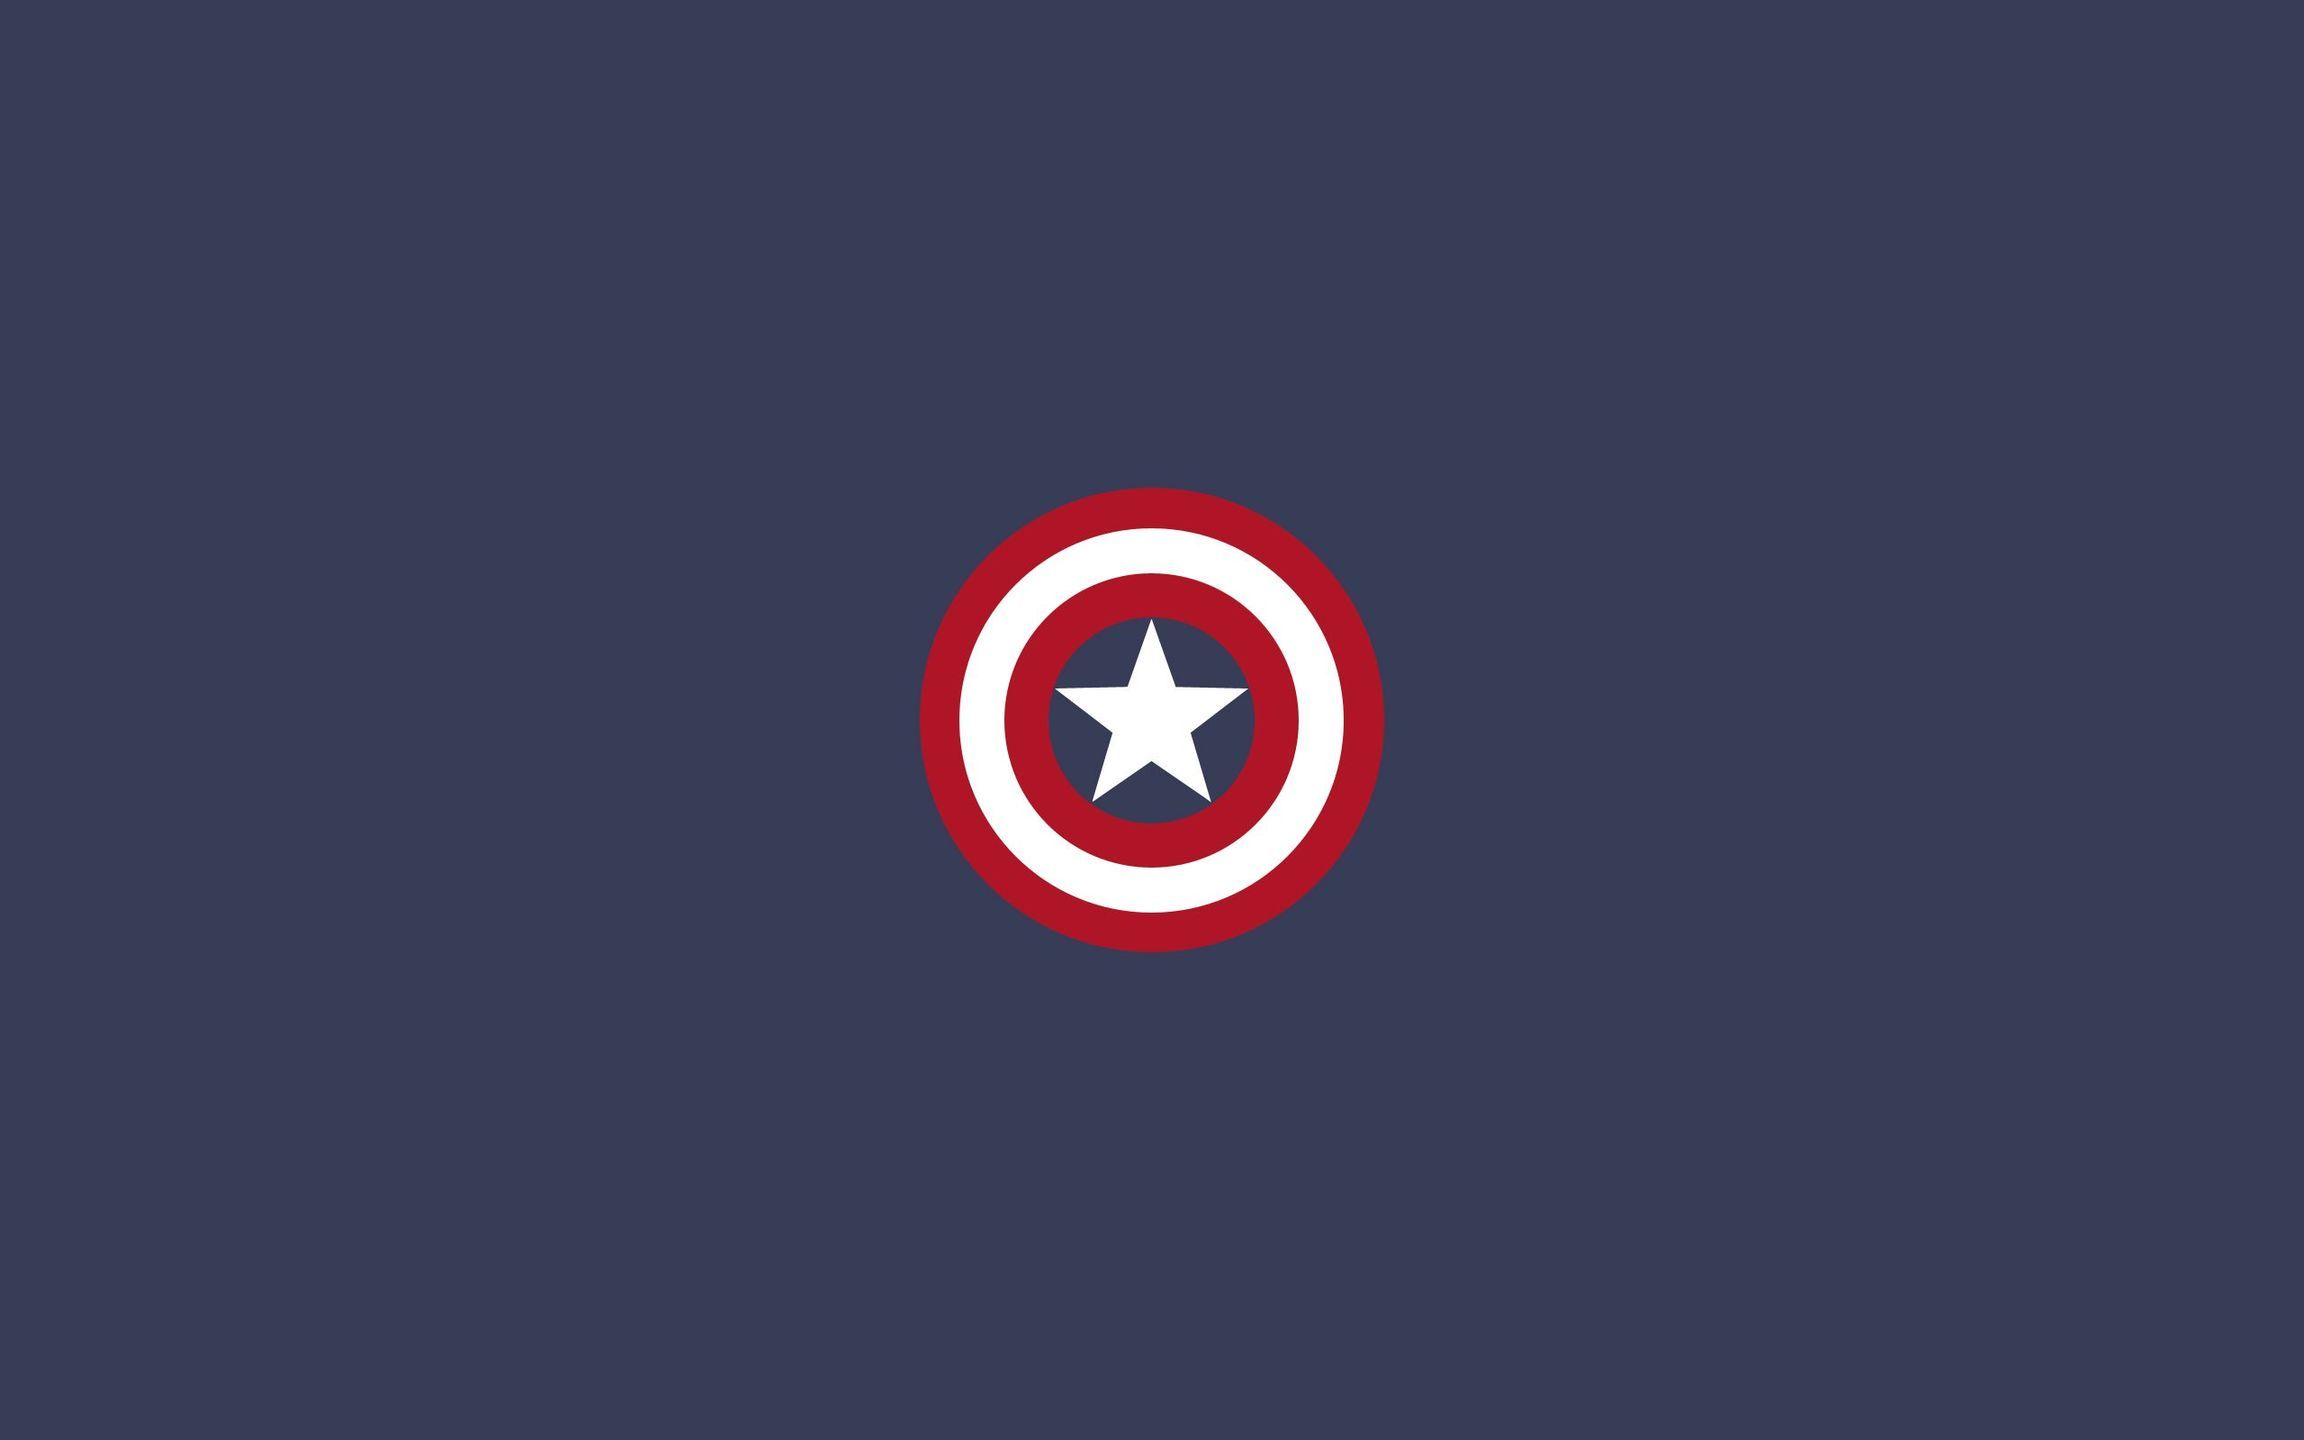 Captain America shield wallpaper